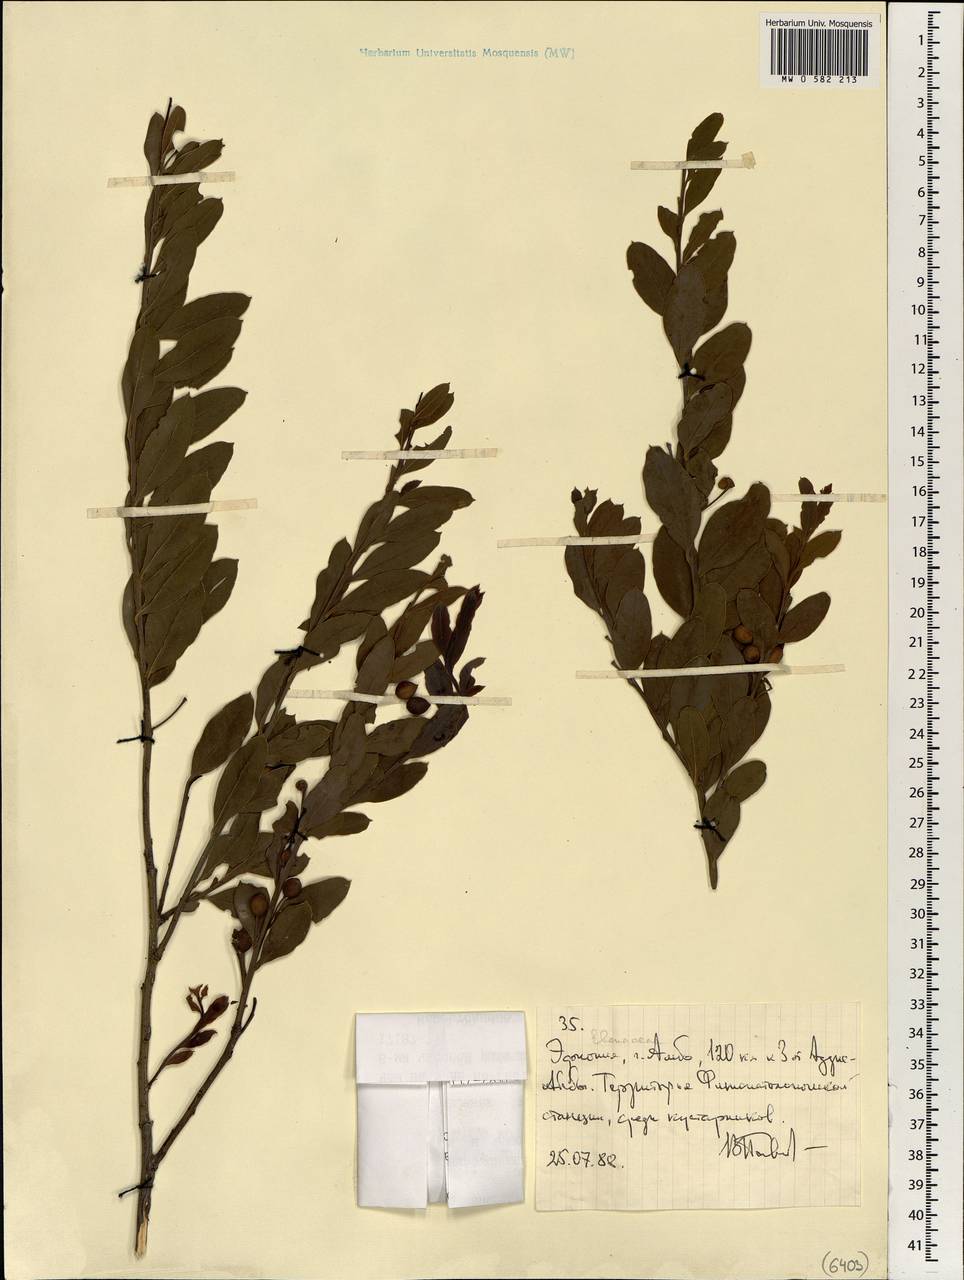 Ebenaceae, Africa (AFR) (Ethiopia)